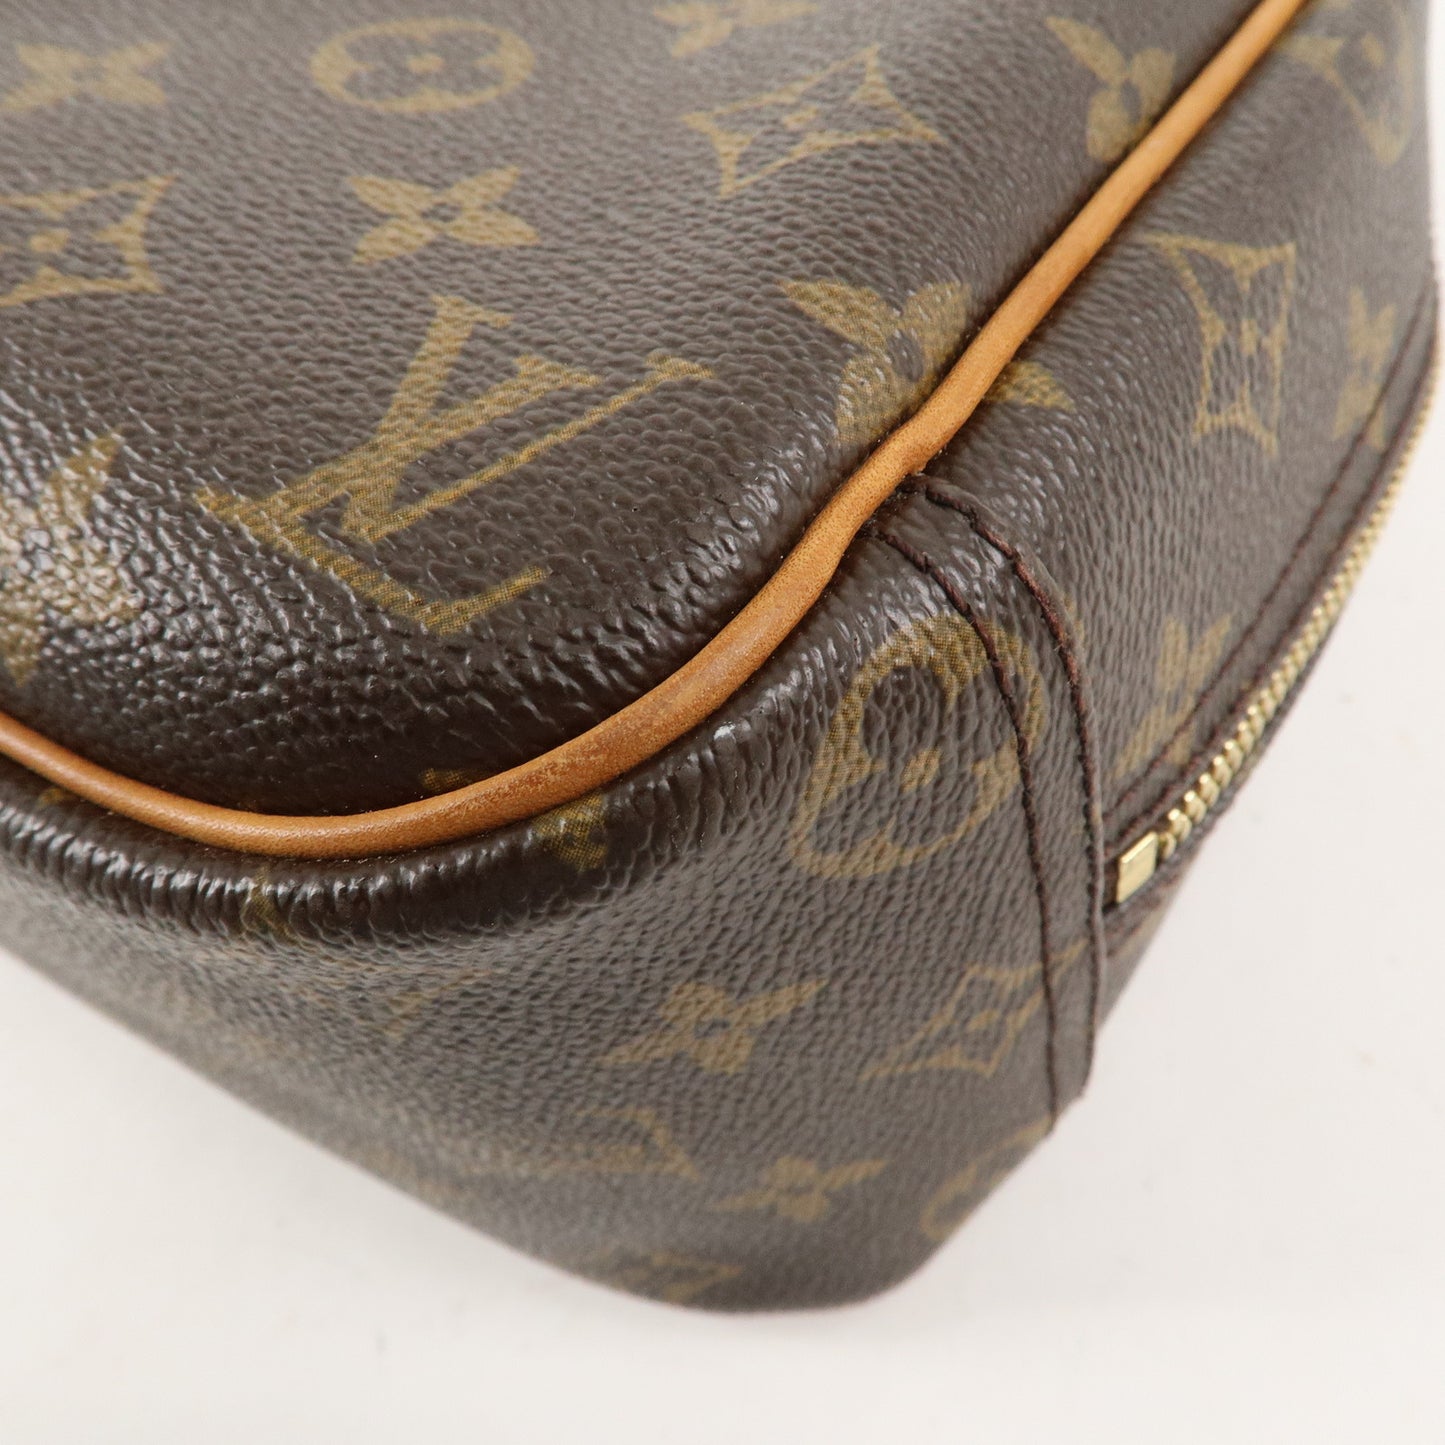 Louis Vuitton Monogram Trouville Hand Bag Brown M42228